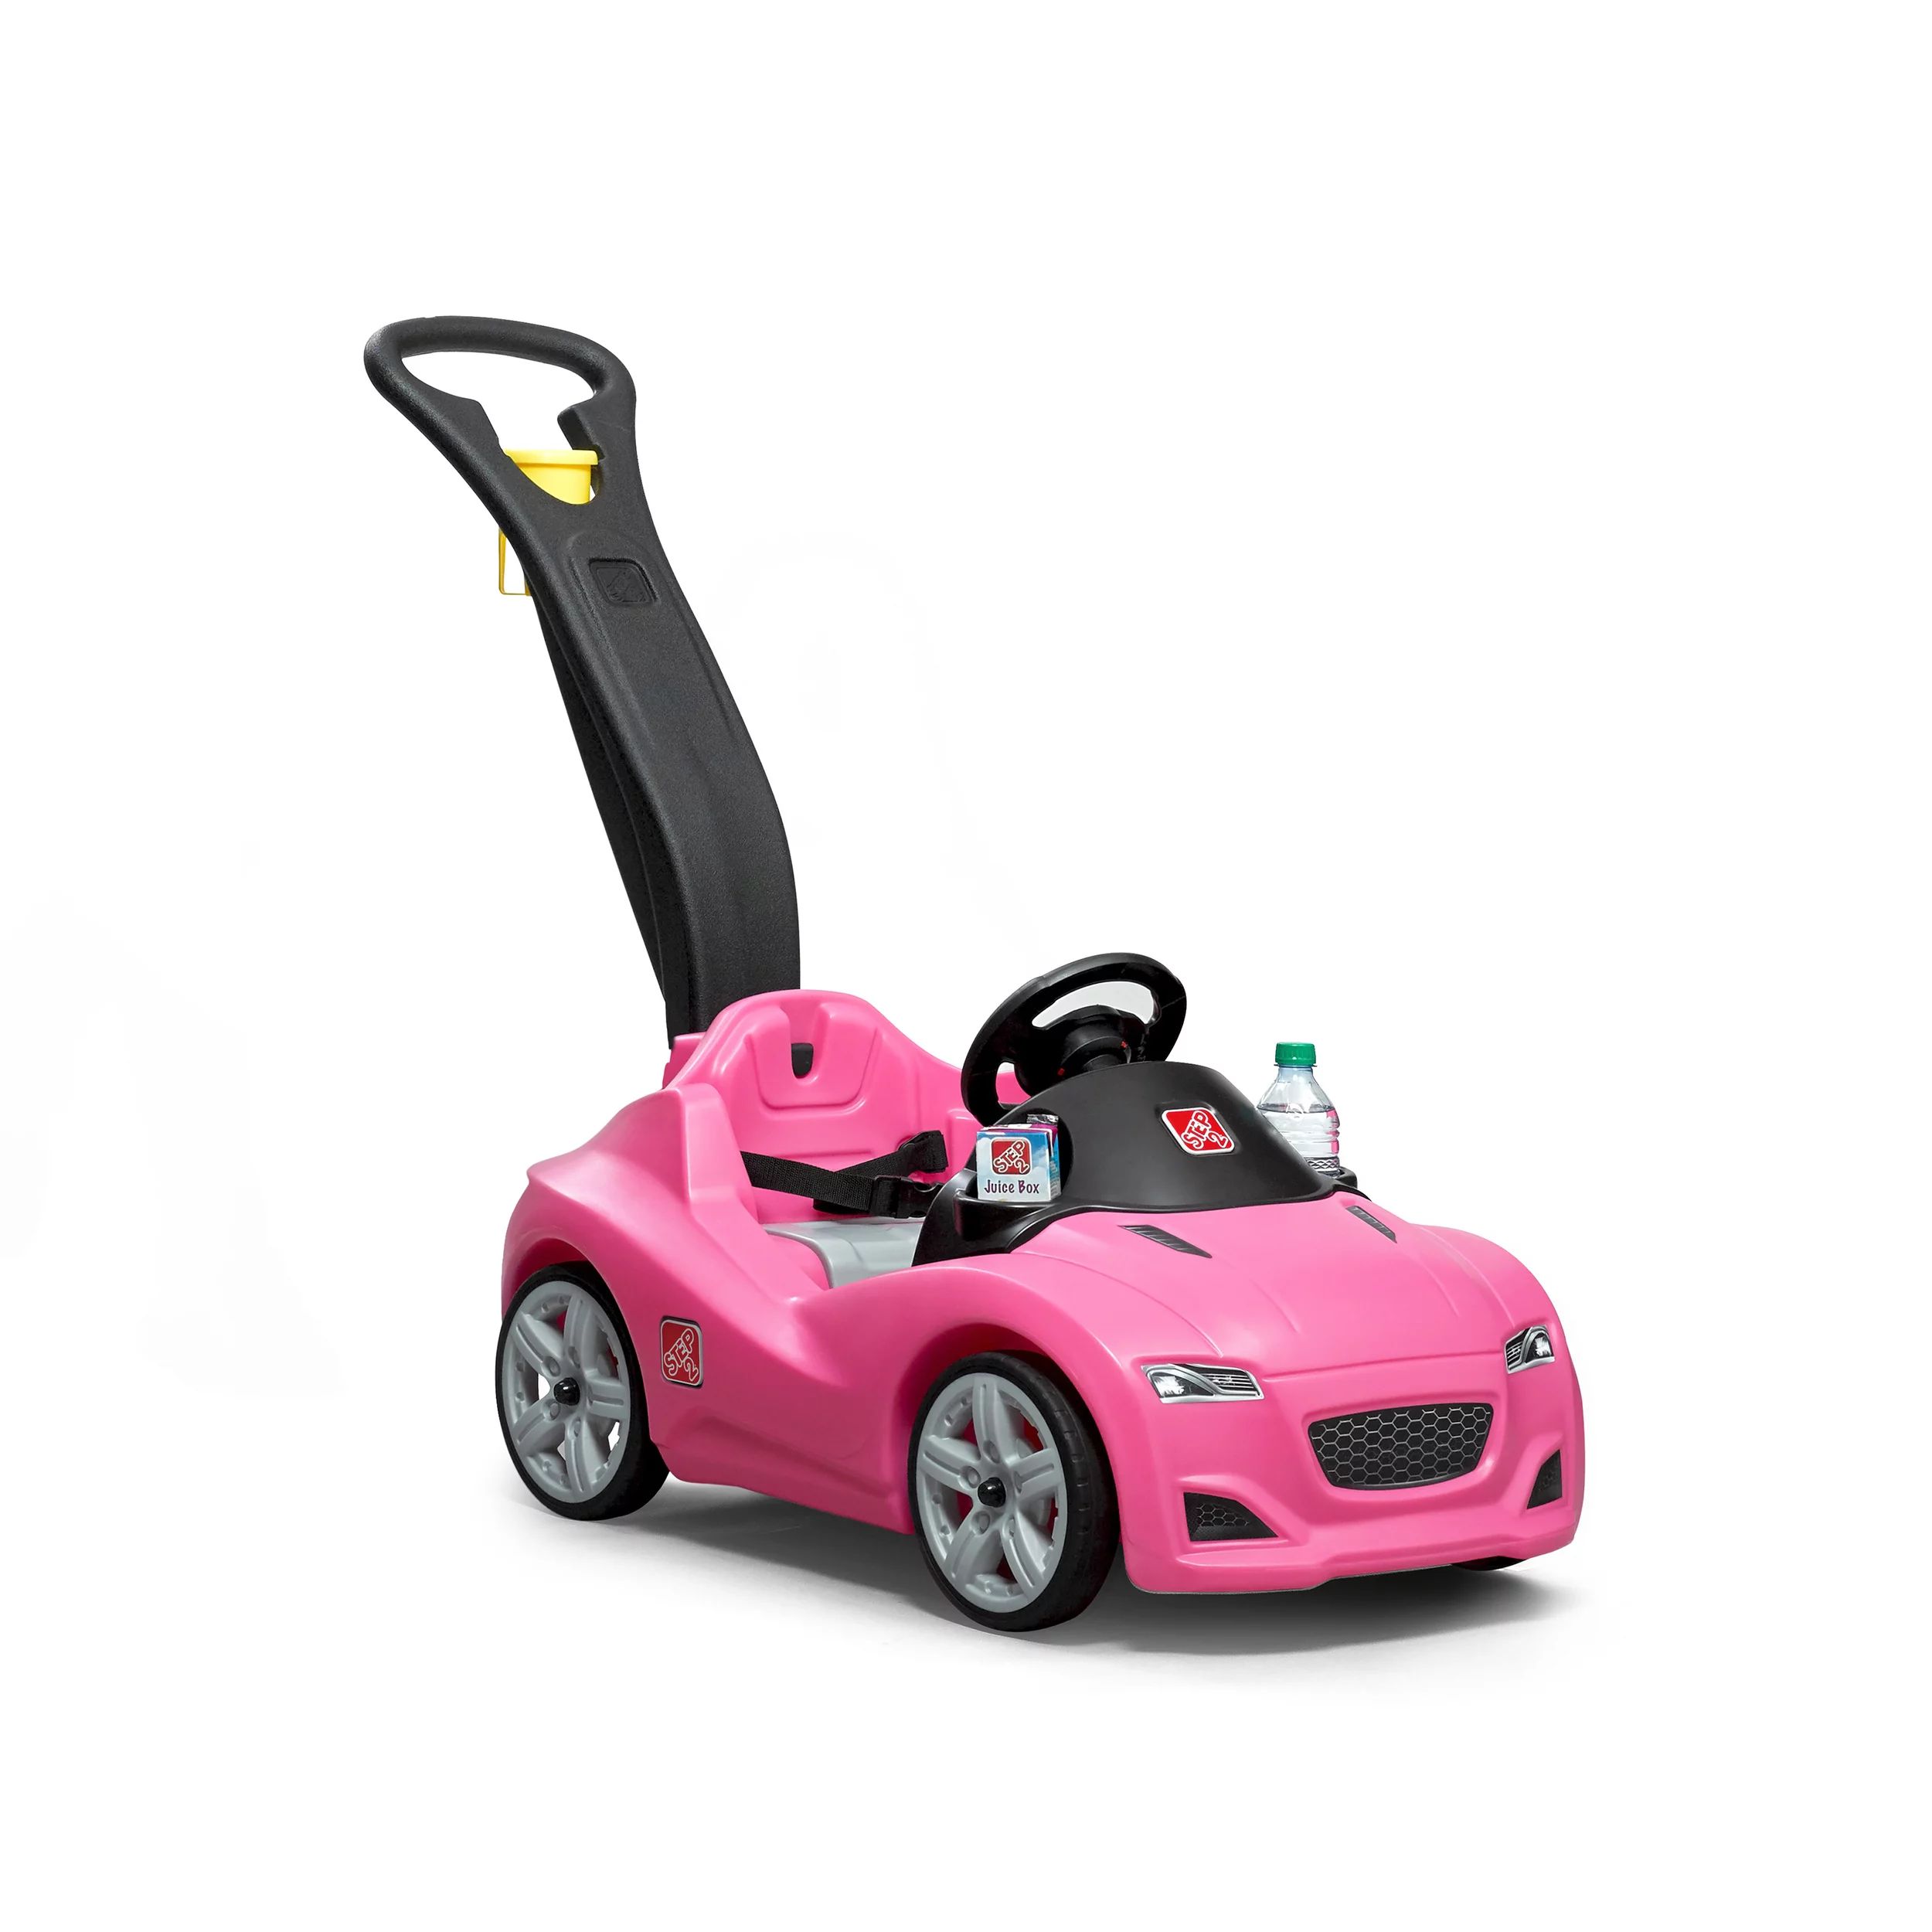 Step2 Whisper Ride Cruiser Toddler Ride On, Pink | Walmart (US)